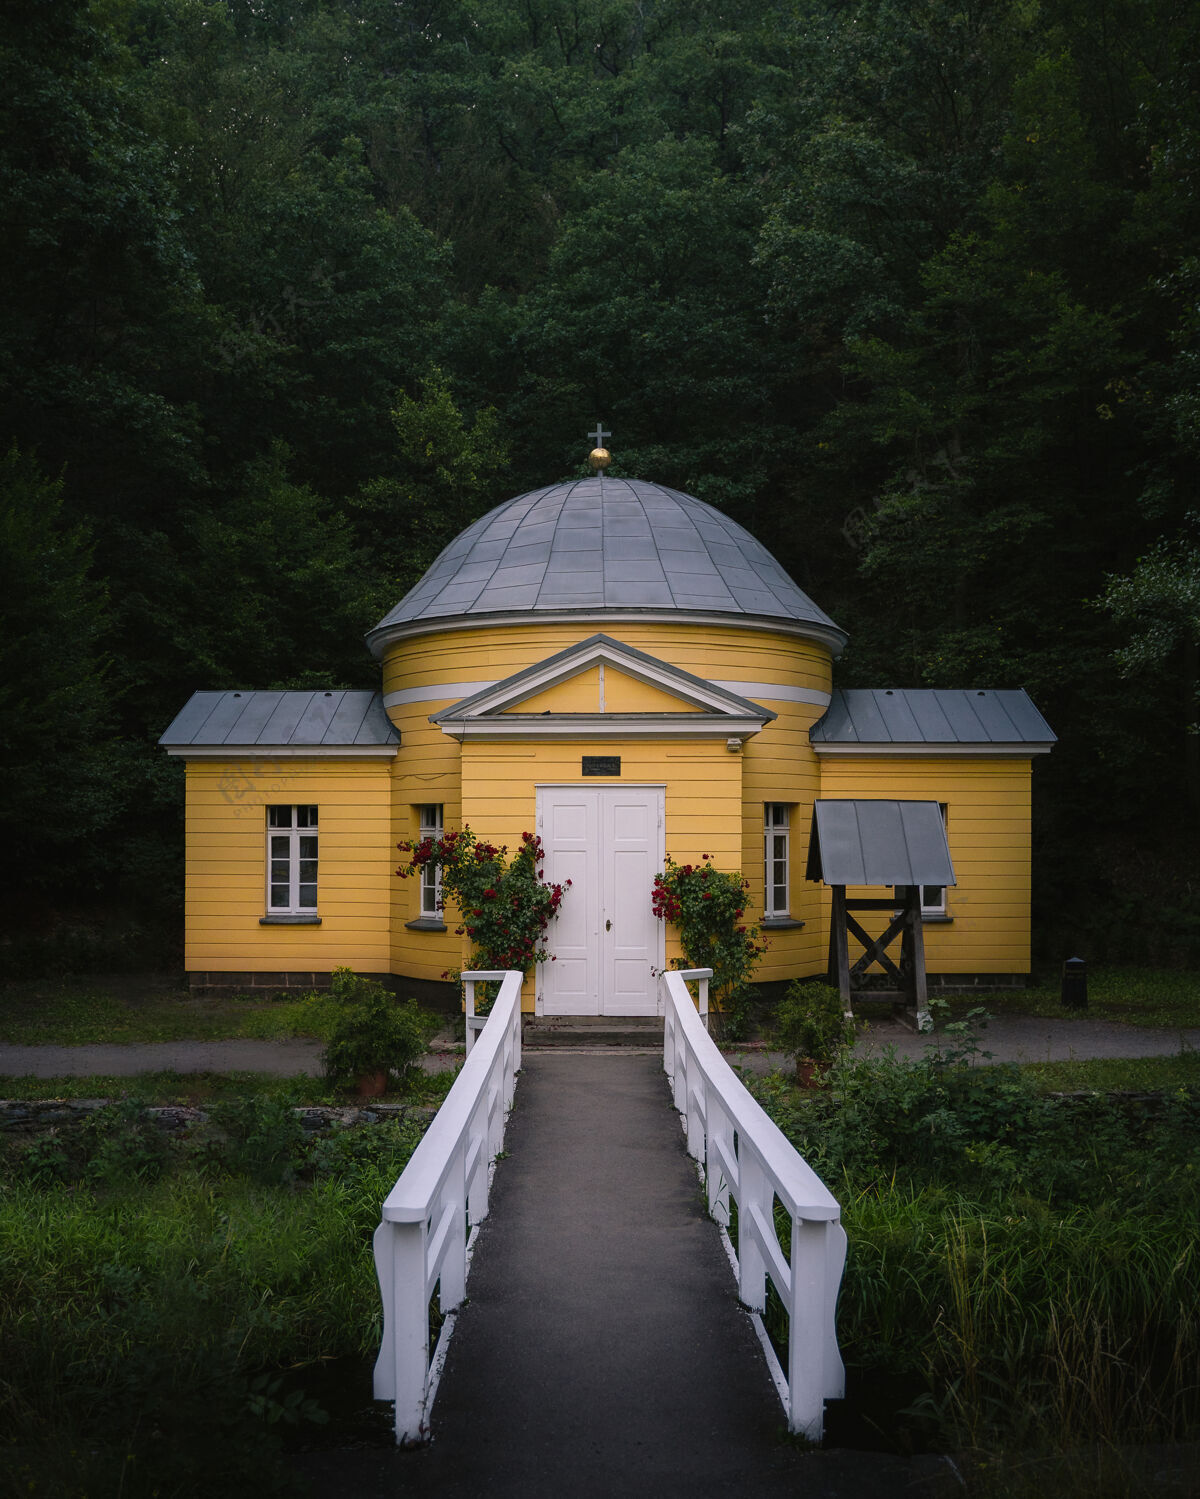 石头一个黄色基督教设施的垂直正面照片 在森林前面有一条小路和一个花园天主教建筑十字架